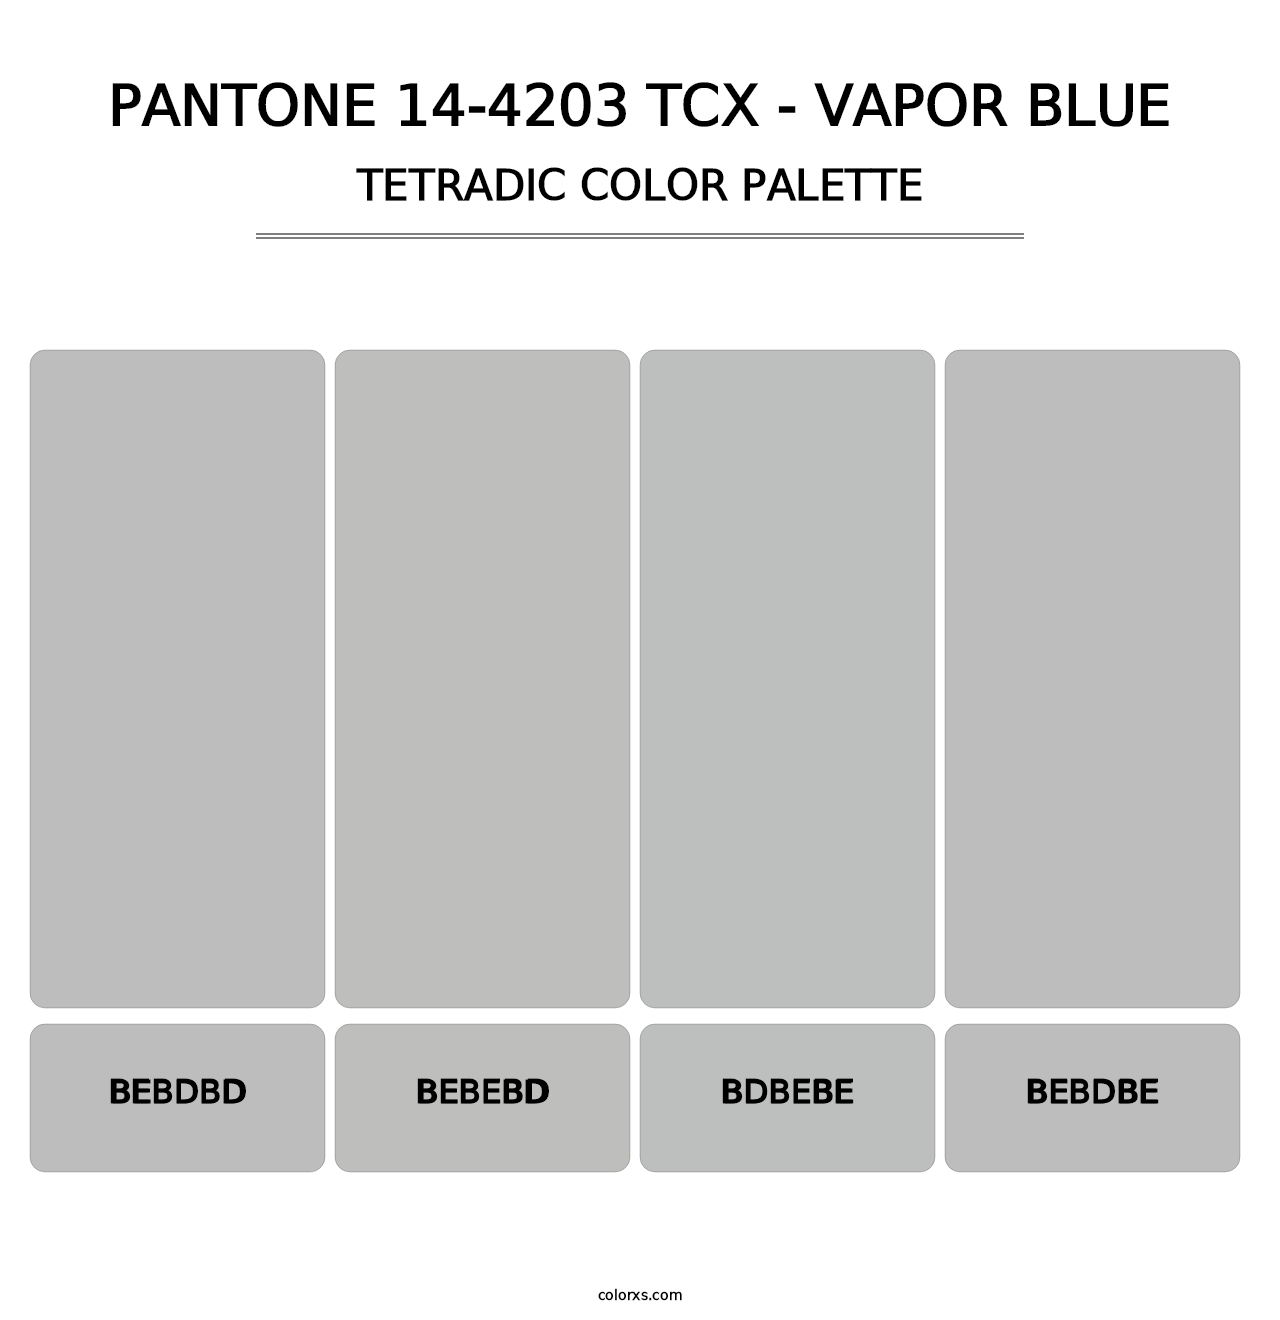 PANTONE 14-4203 TCX - Vapor Blue - Tetradic Color Palette